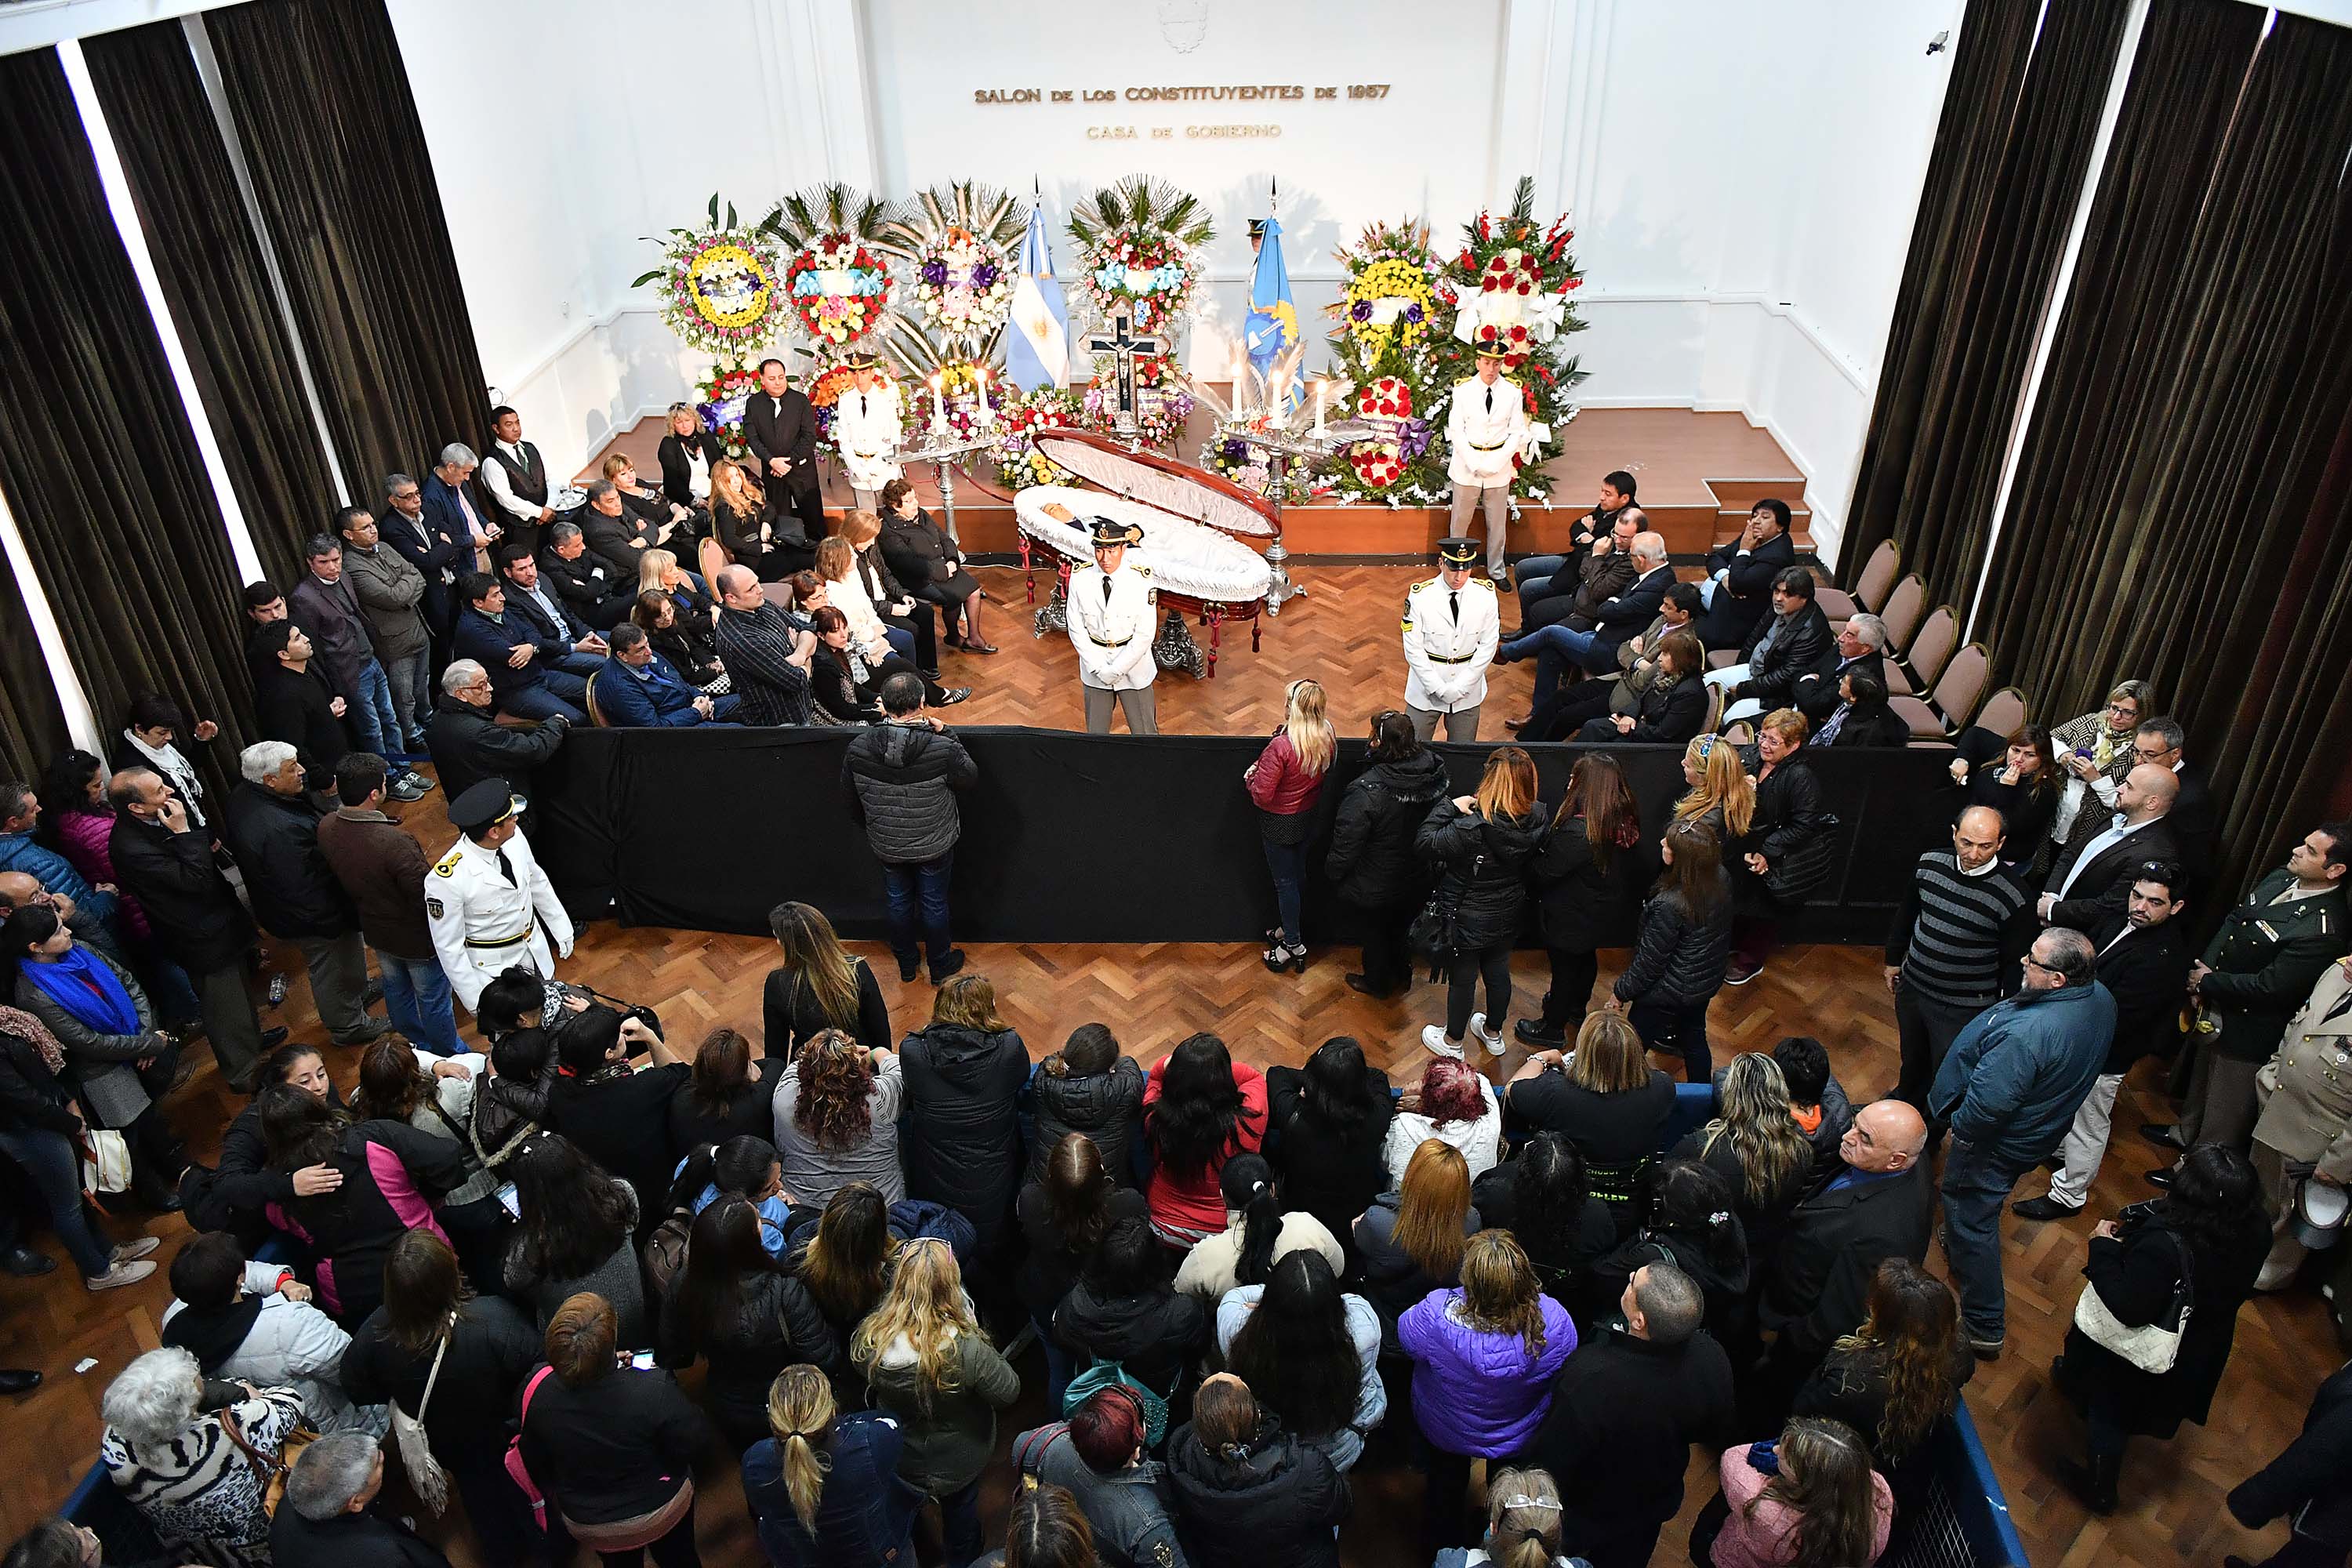 Recorrido del cortejo fúnebre del gobernador Mario Das Neves